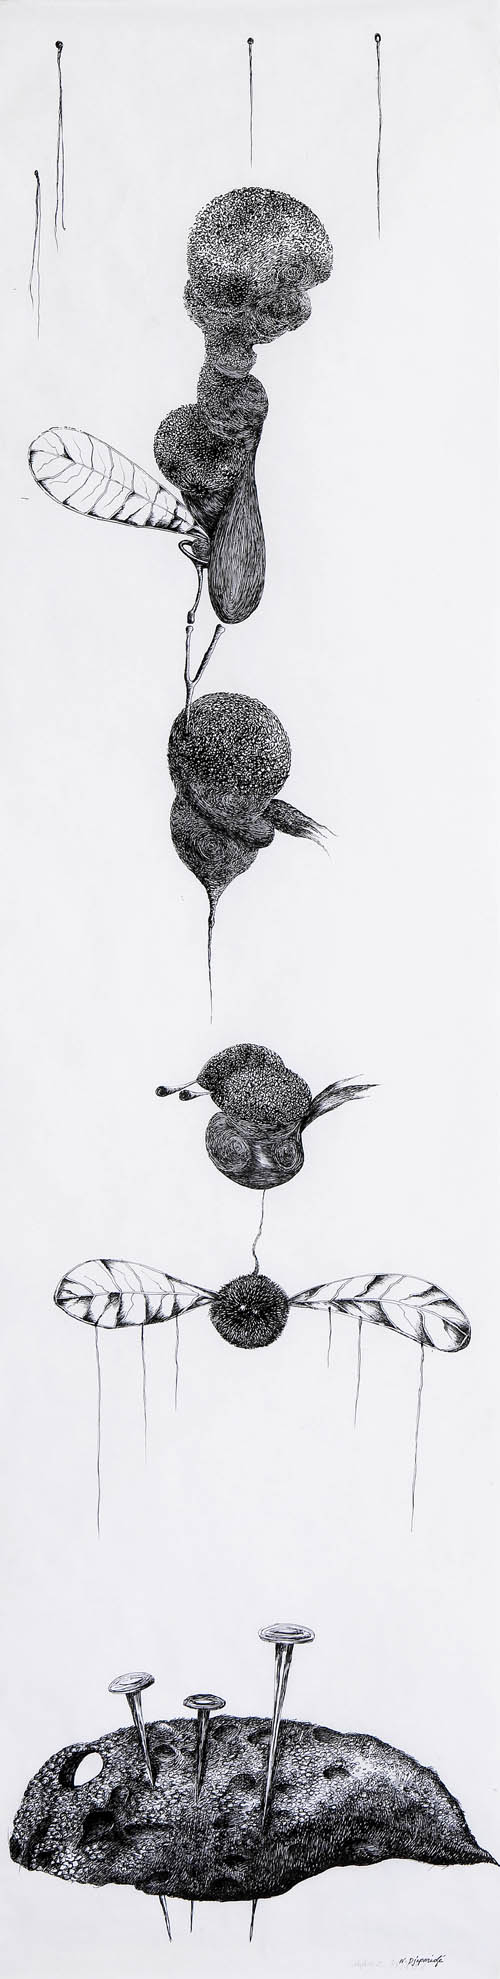 Nino Japaridze | Le bestiaire I (The Bestiary I) - 2008 ink on paper